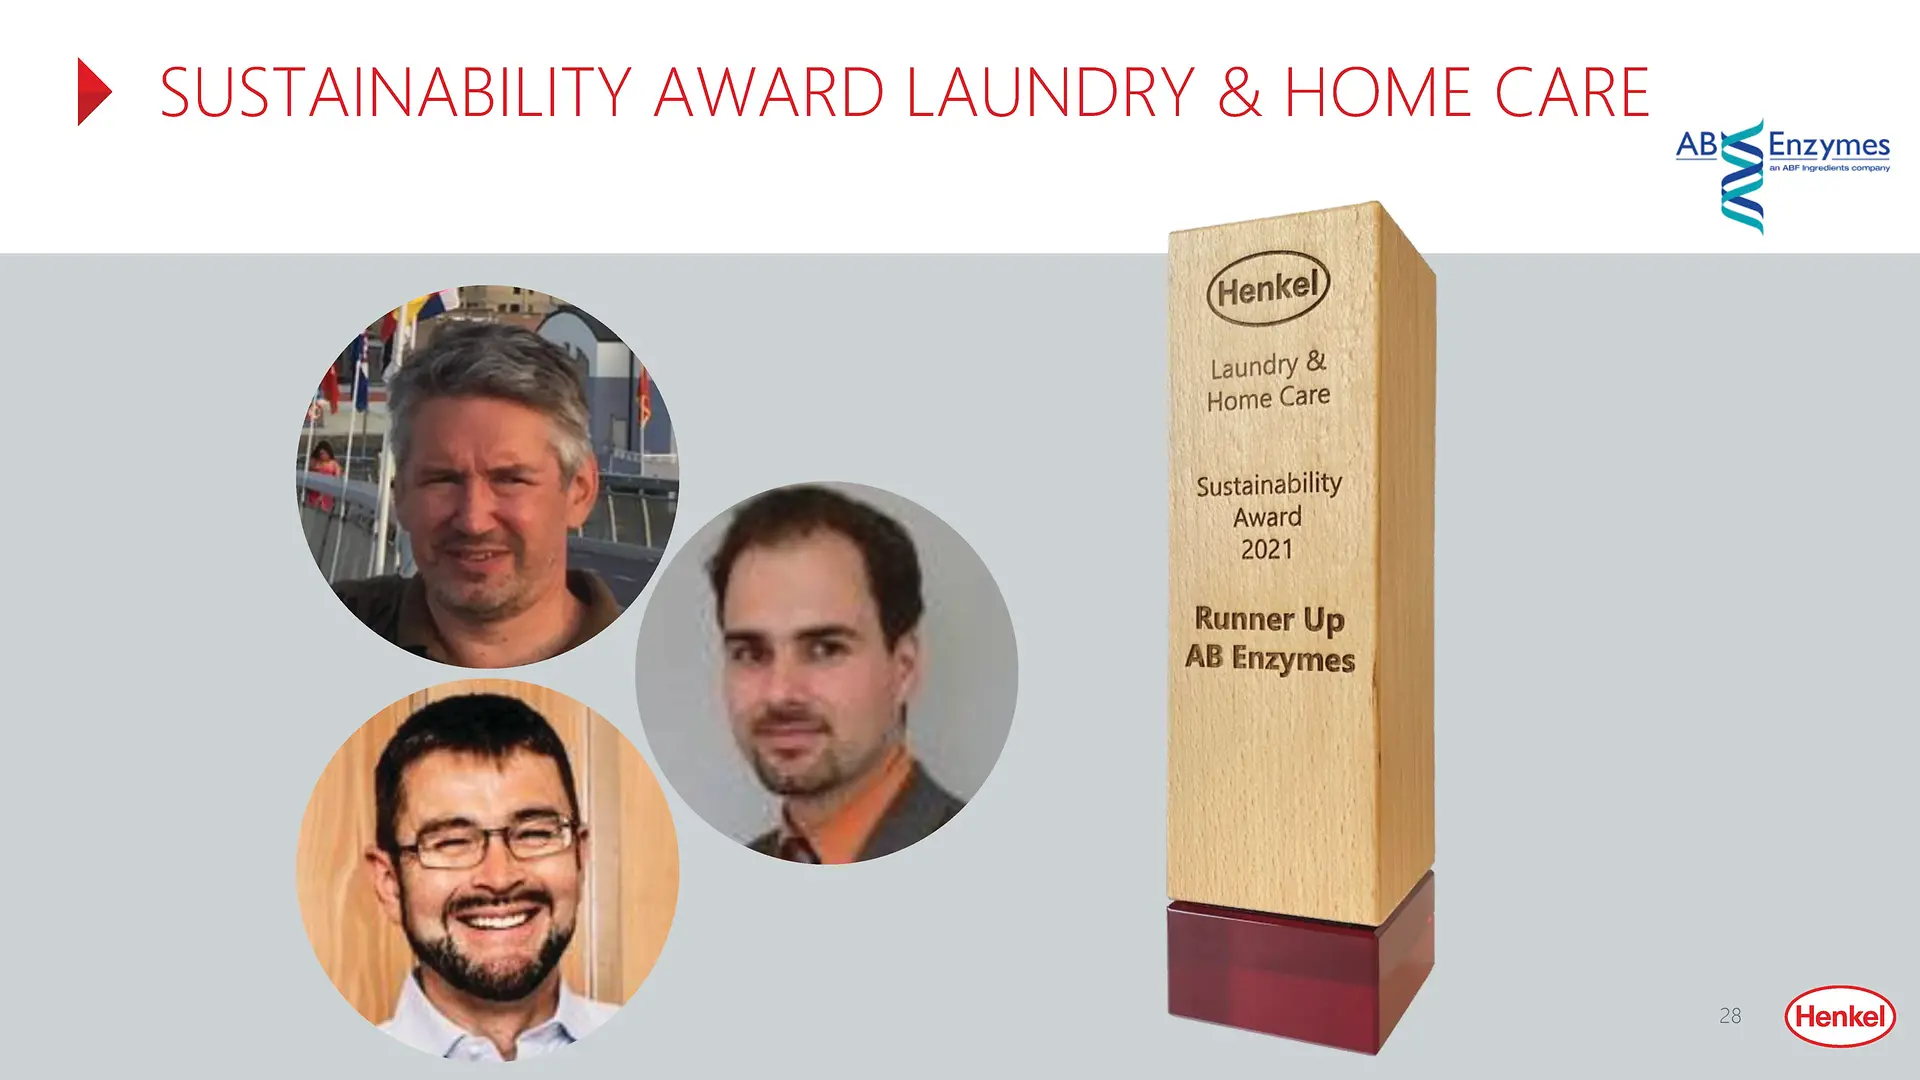 
AB Enzymes gewinnt den zweiten Platz in der Kategorie„Sustainability Award“ von Laundry & Home Care.